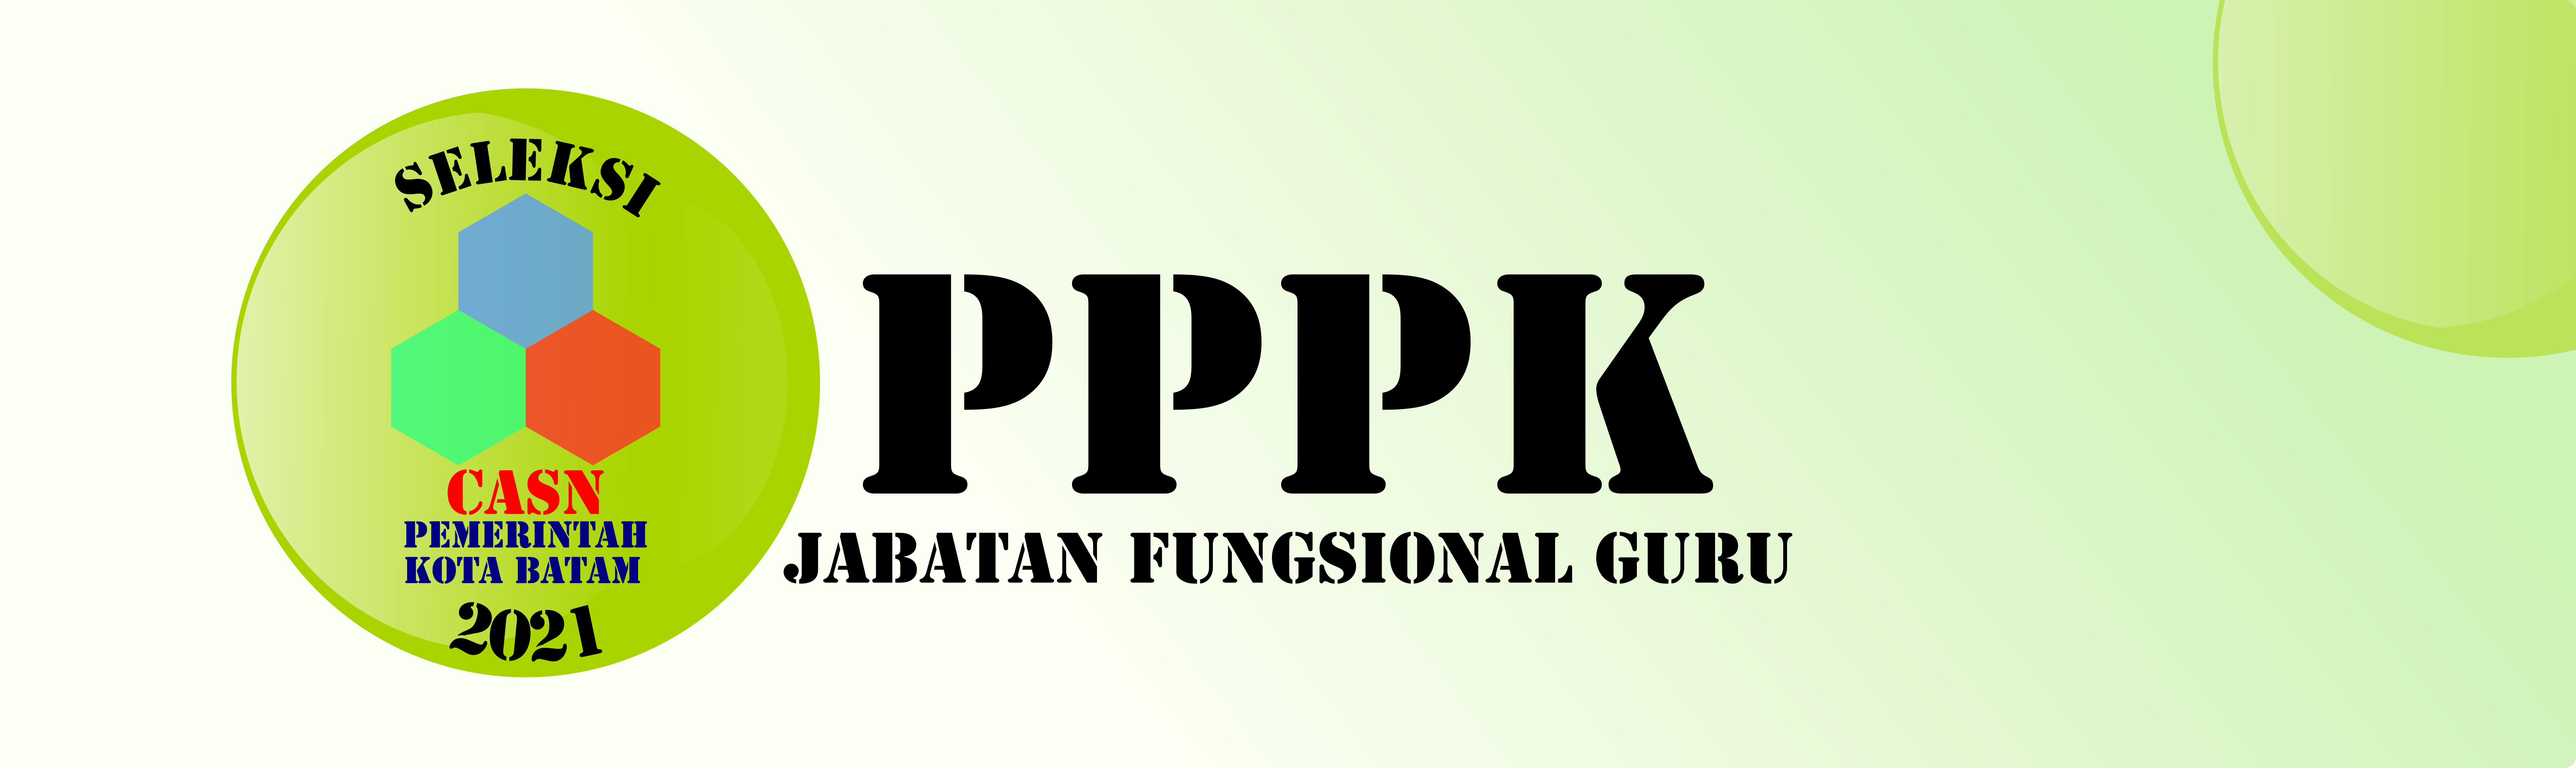 Portal PPPK Jabatan Fungsional Guru - Badan Kepegawaian dan